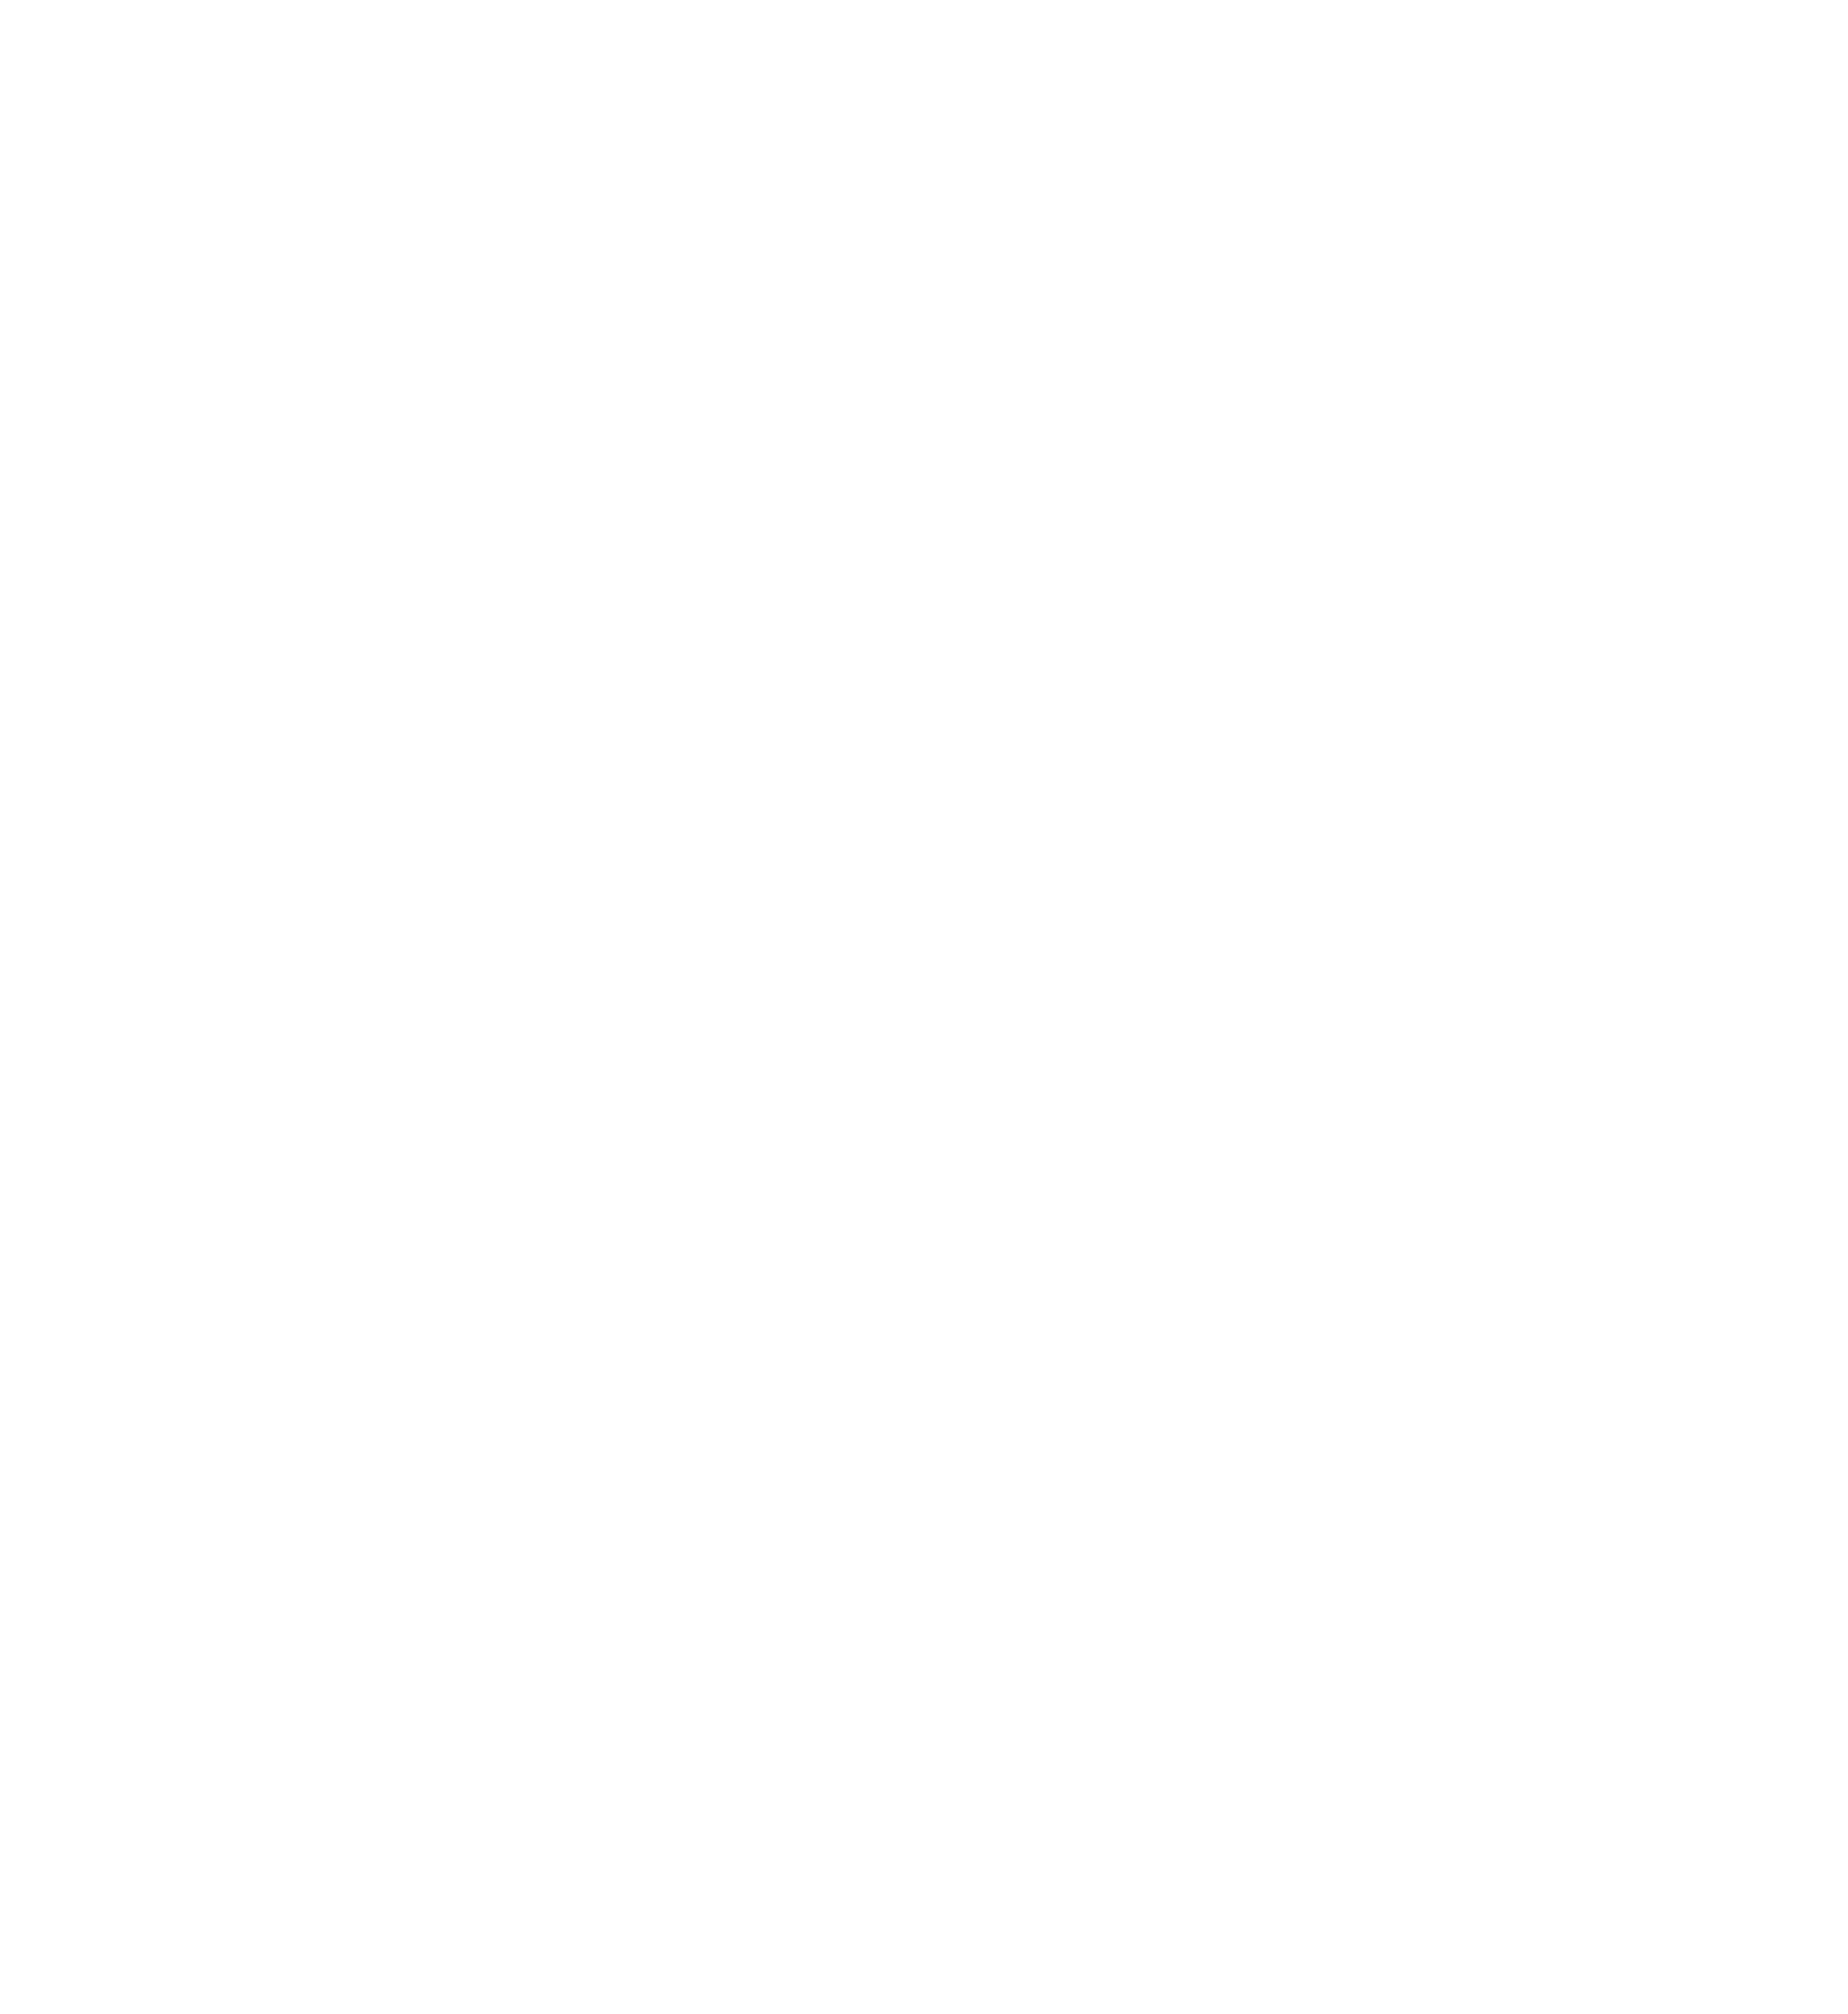 SD sponsor '22 liquid death@300x.png